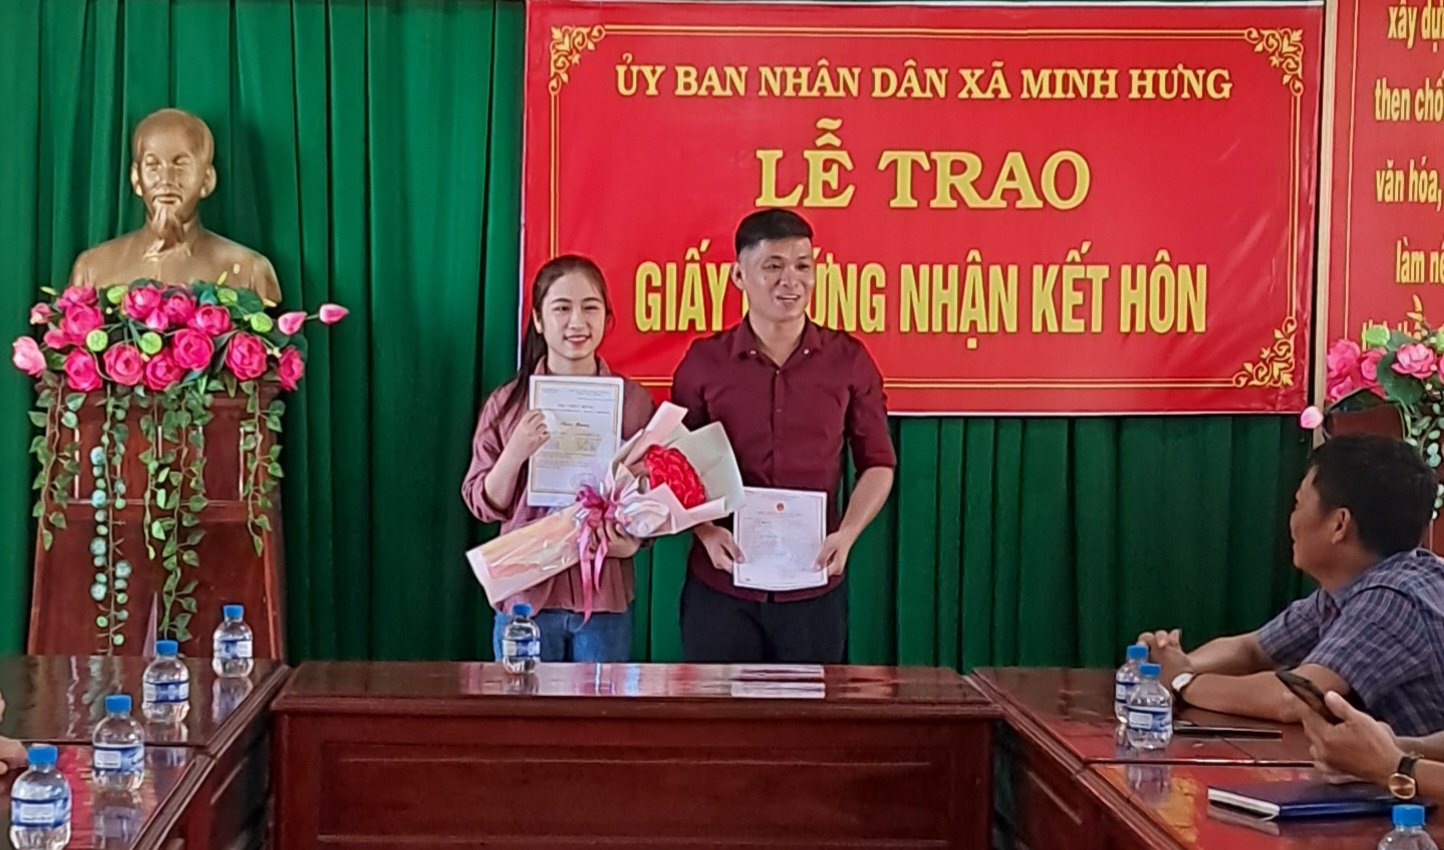 UBND xã Minh Hưng, huyện Bù Đăng trao giấy chứng nhận kết hôn cho công dân